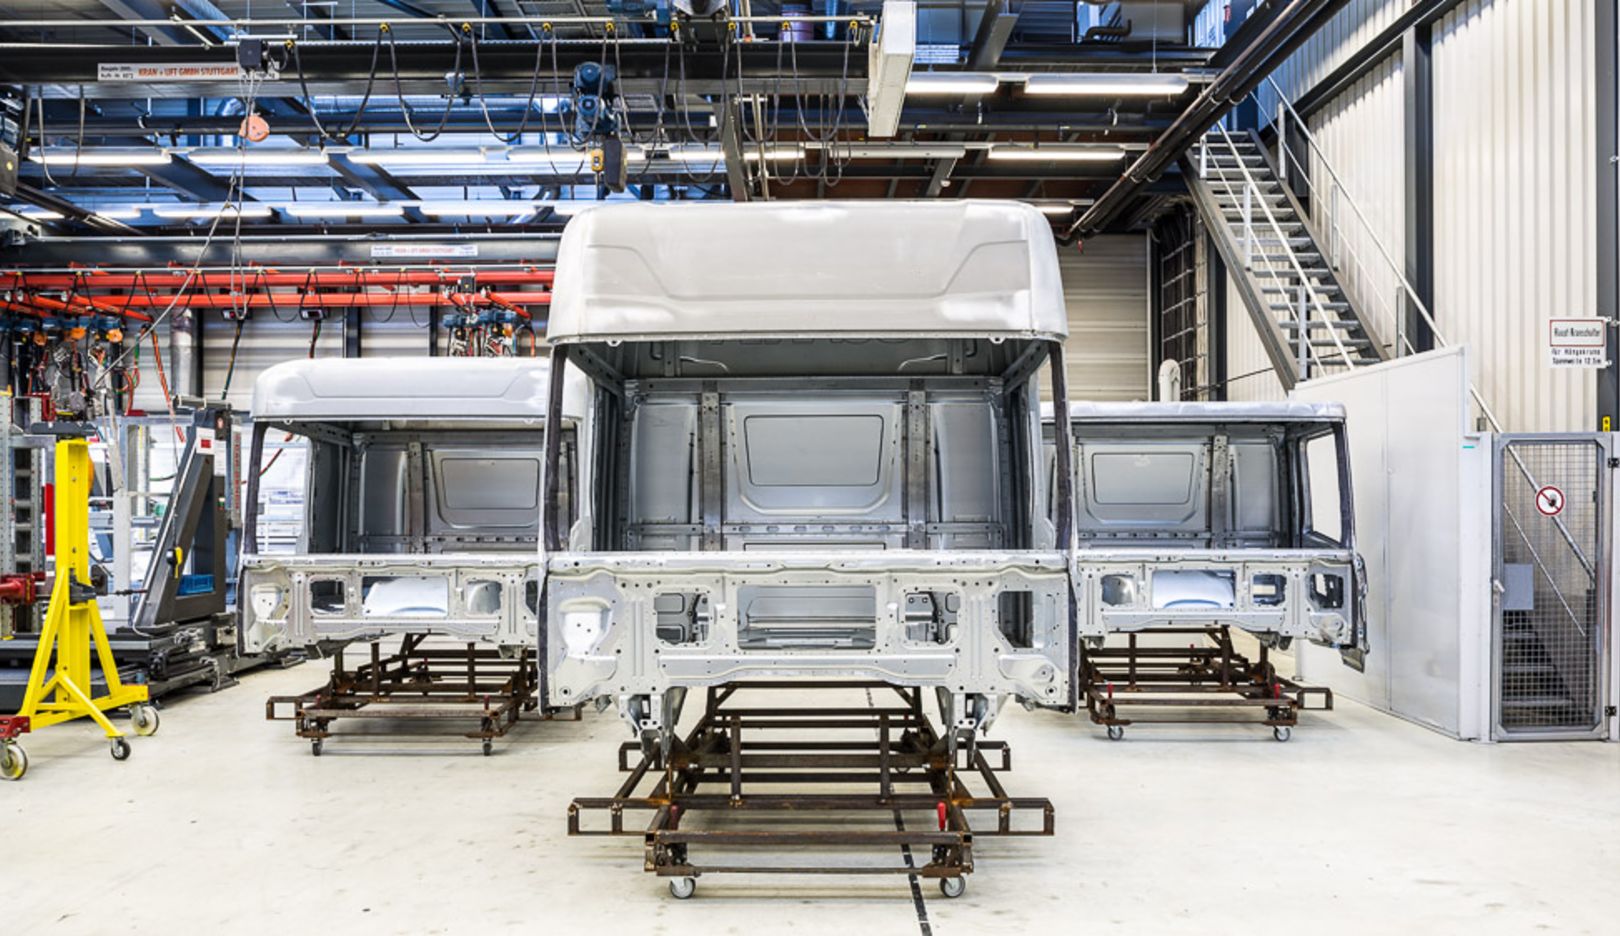 2010 – Lkw-Kabinenentwickelung für Scania: Mit der Scania S-Serie und R-Serie wurde eine völlig neue Fahrerhausgeneration entwickelt. Das Ergebnis ist ein flexibler Kabinenbaukasten, der es ermöglicht schnell und einfach den unterschiedlichen Anforderungen gerecht zu werden. 